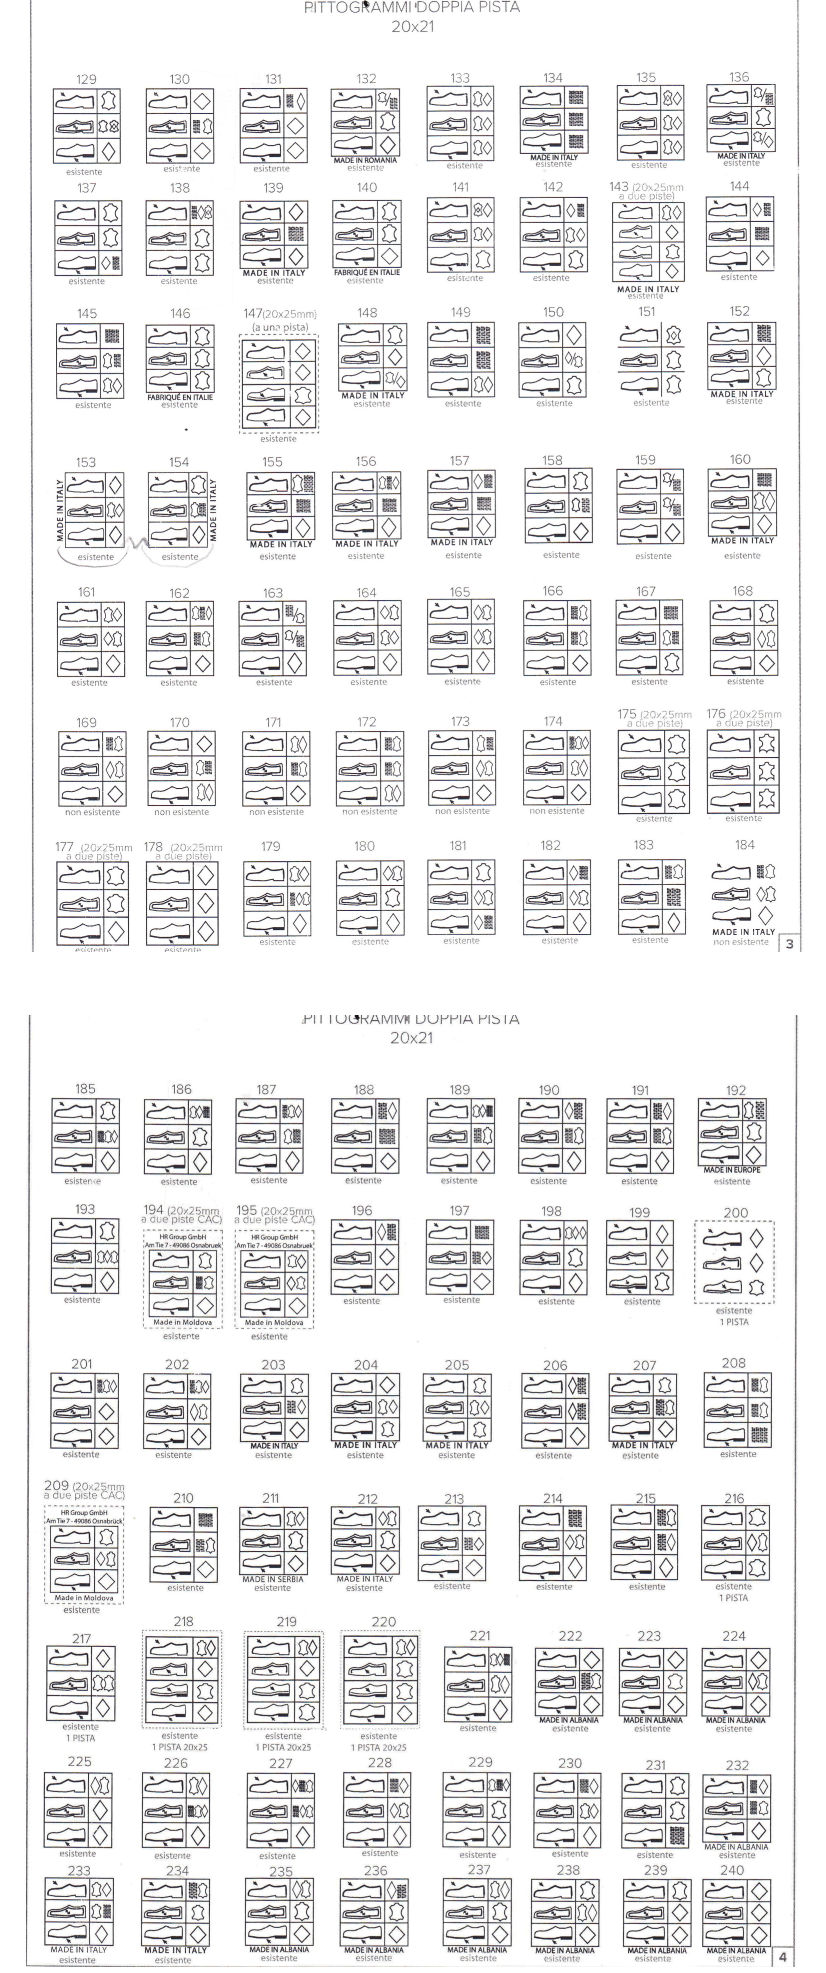 Cartella tipologie pittogrammi grande pagina 2 